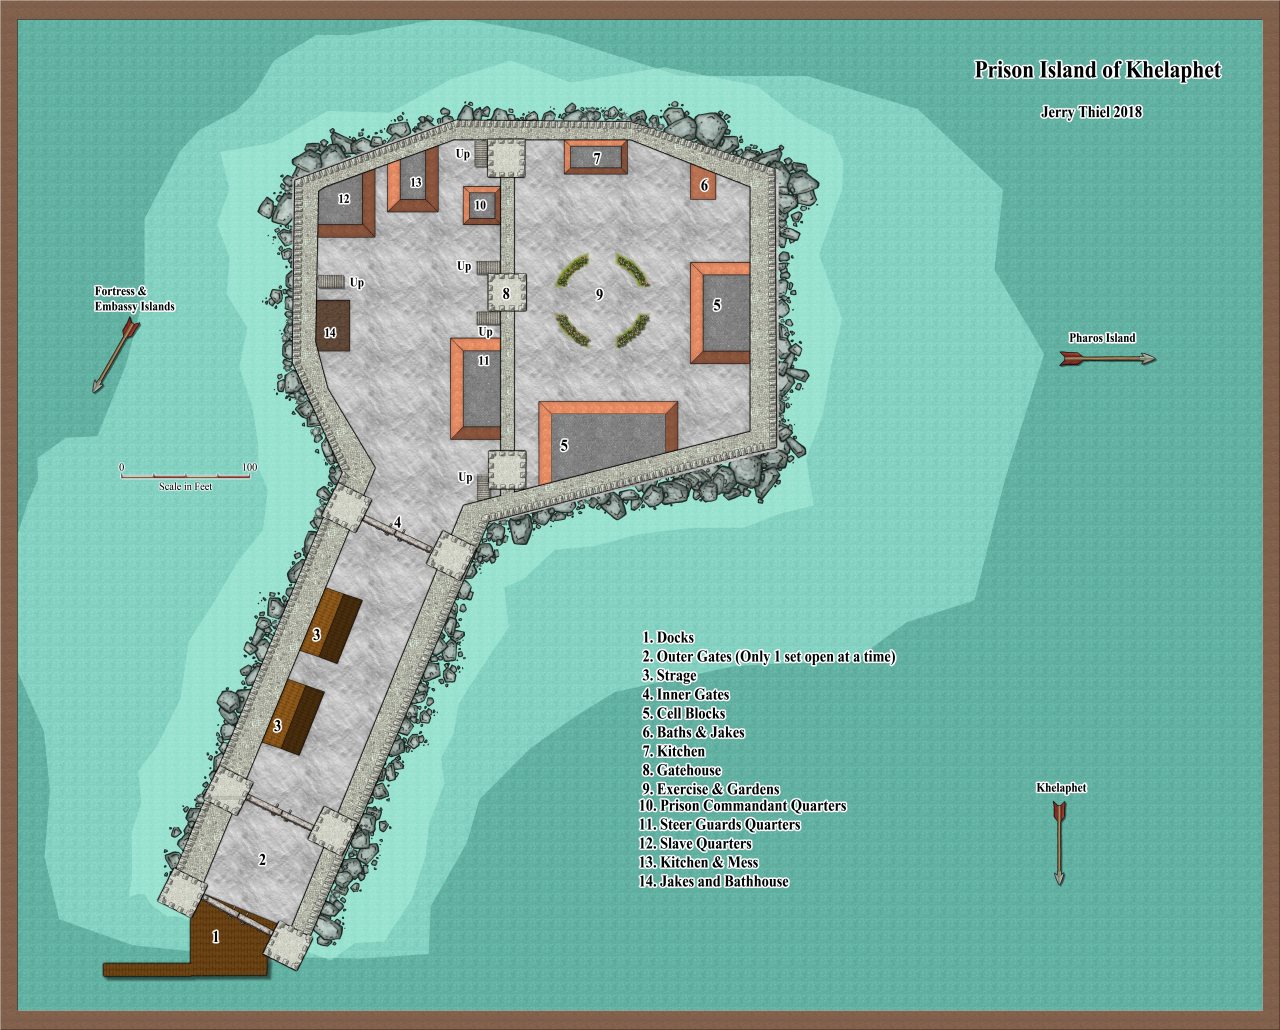 Nibirum Map: Prison Island of Khelaphet by Jerry Thiel